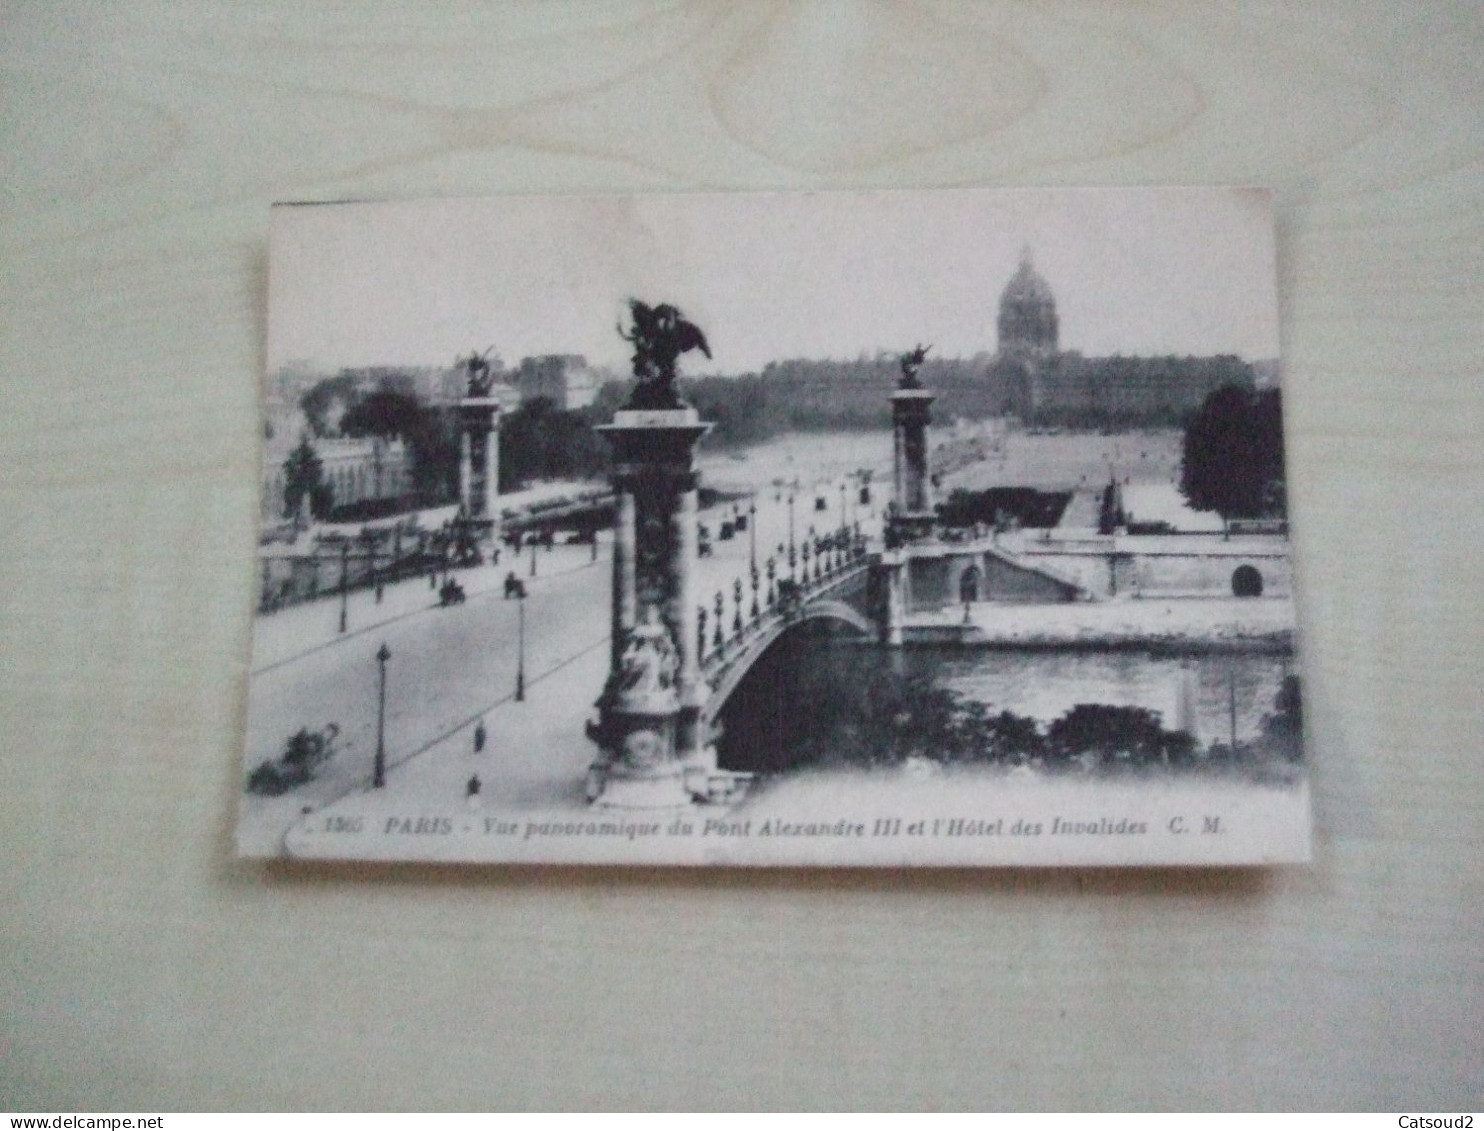 Carte Postale Ancienne PARIS Vue Panoramique Du Pont Alexandre III Et L'hôtel Des Invalides - Die Seine Und Ihre Ufer